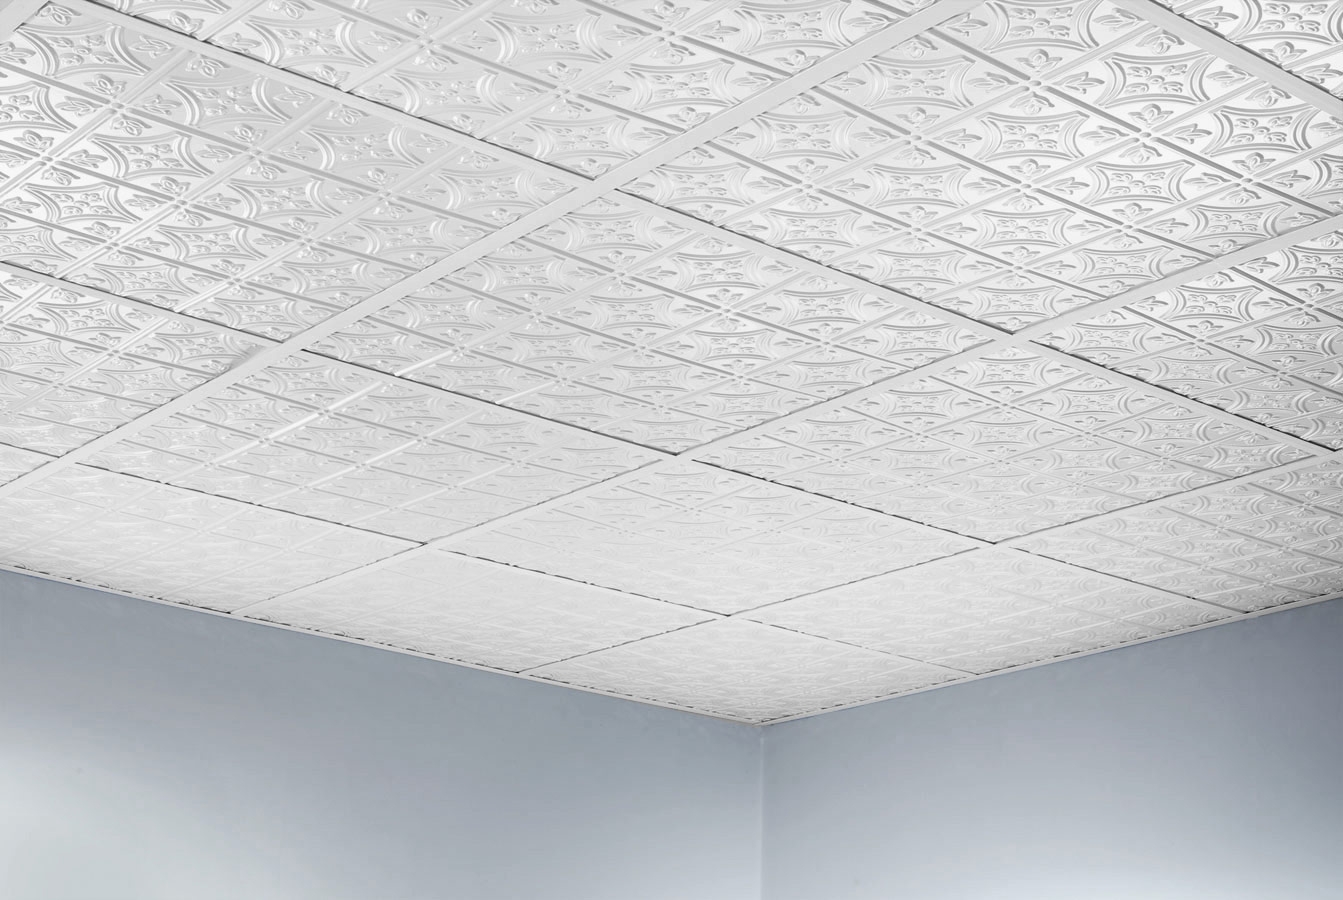 Waterproof Drop Ceiling Tiles Waterproof Drop Ceiling Tiles 2x2 drop in ceiling tiles design new basement and tile 1343 X 900